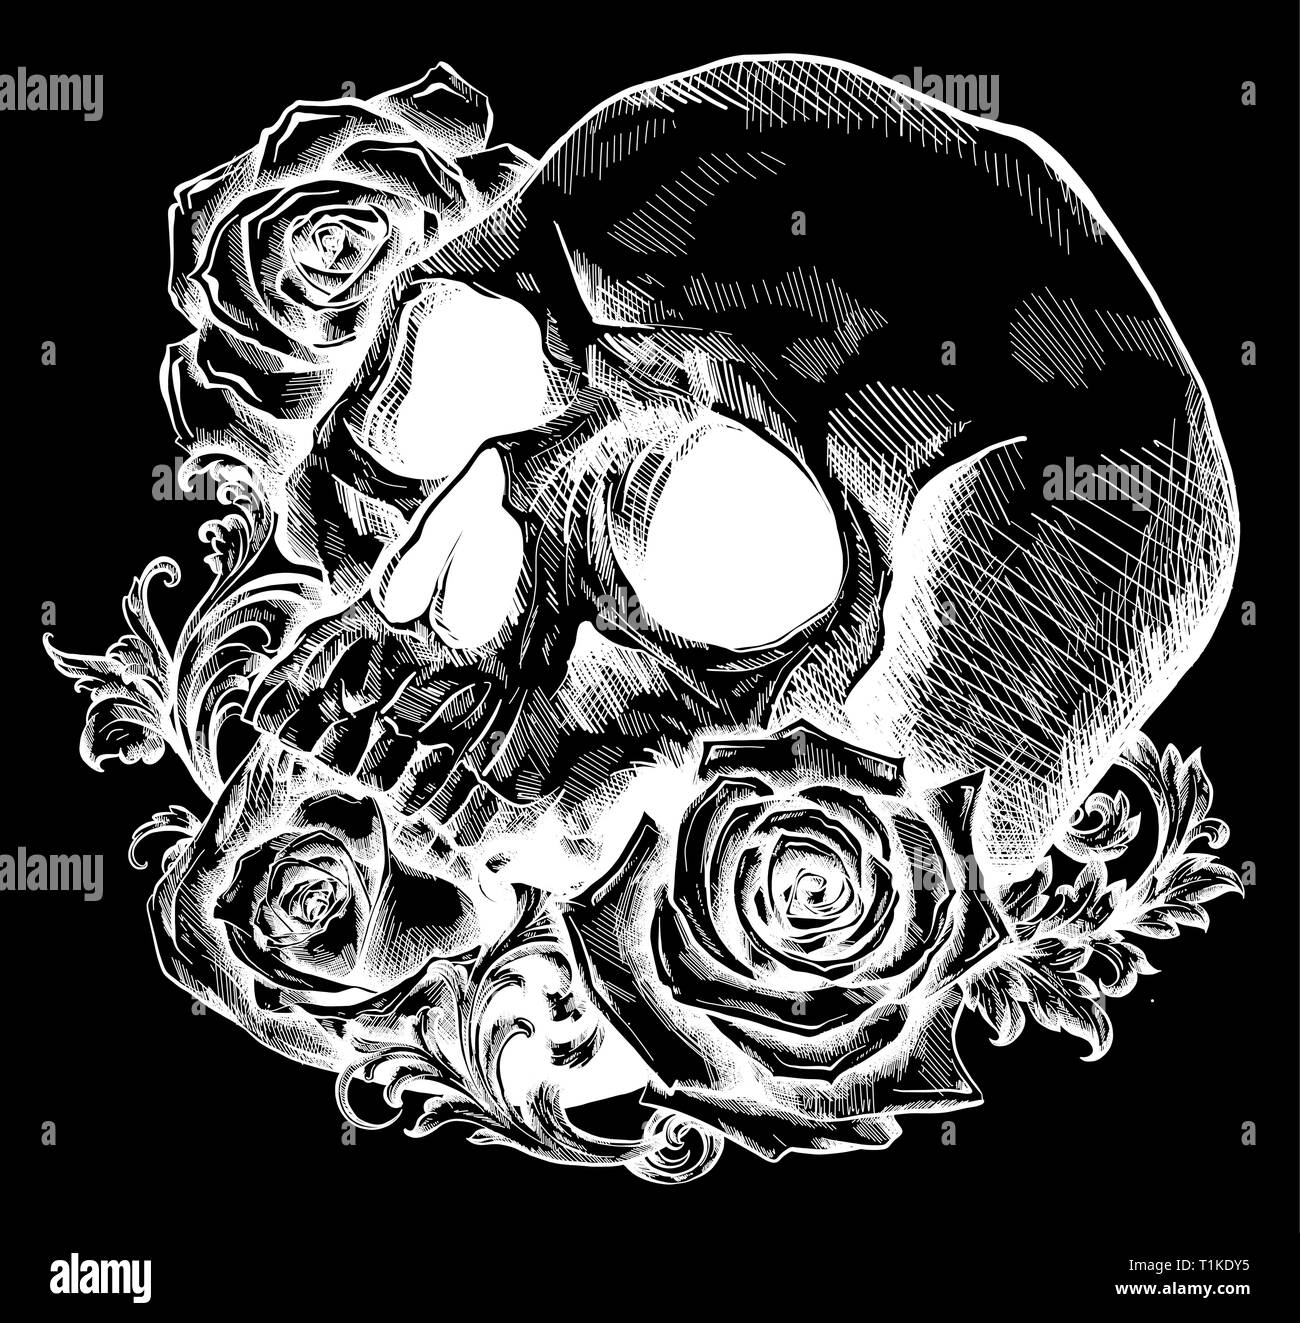 Un crâne humain avec des roses sur fond noir Illustration de Vecteur